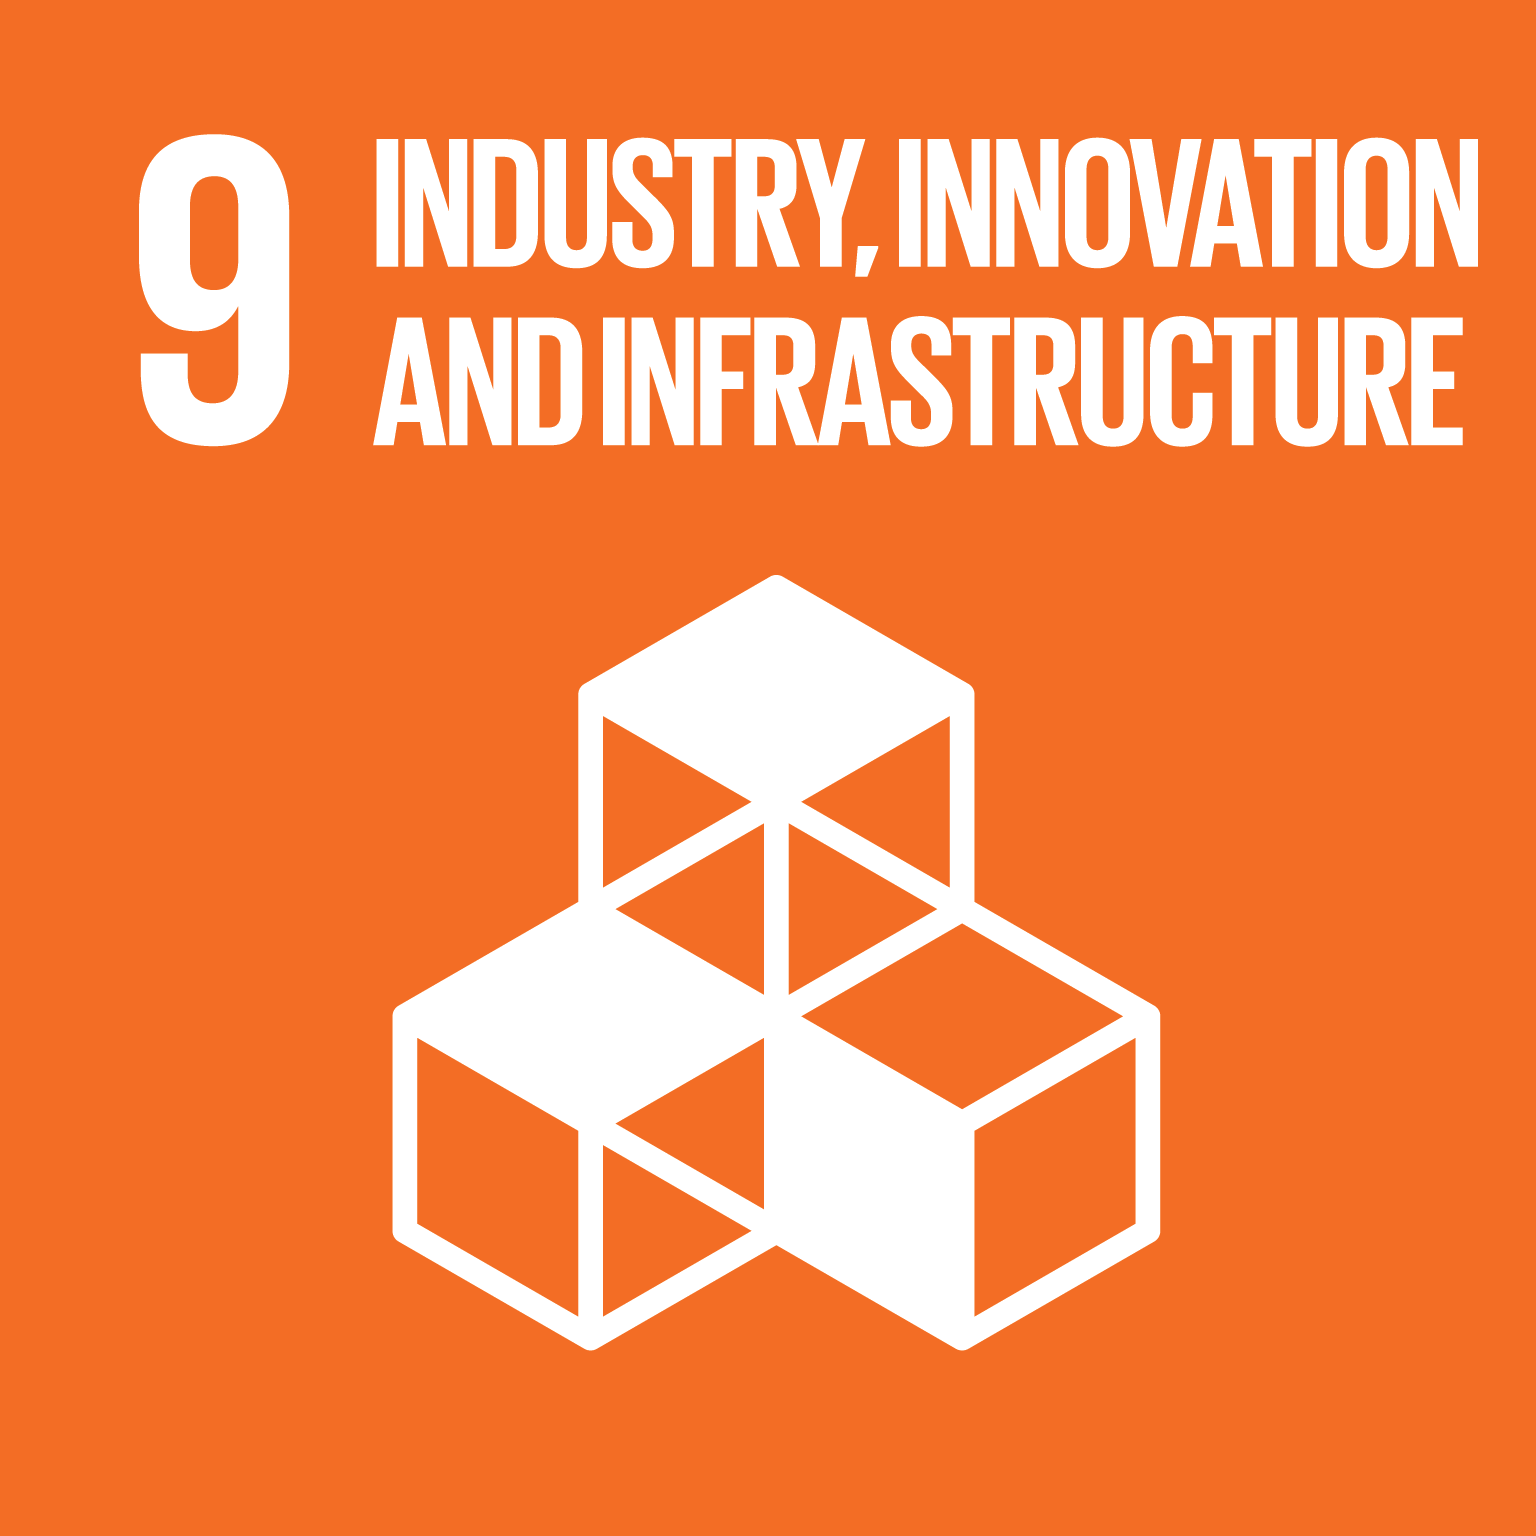 建立具有韌性的基礎建設，促進包容且永續的工業，並加速創新